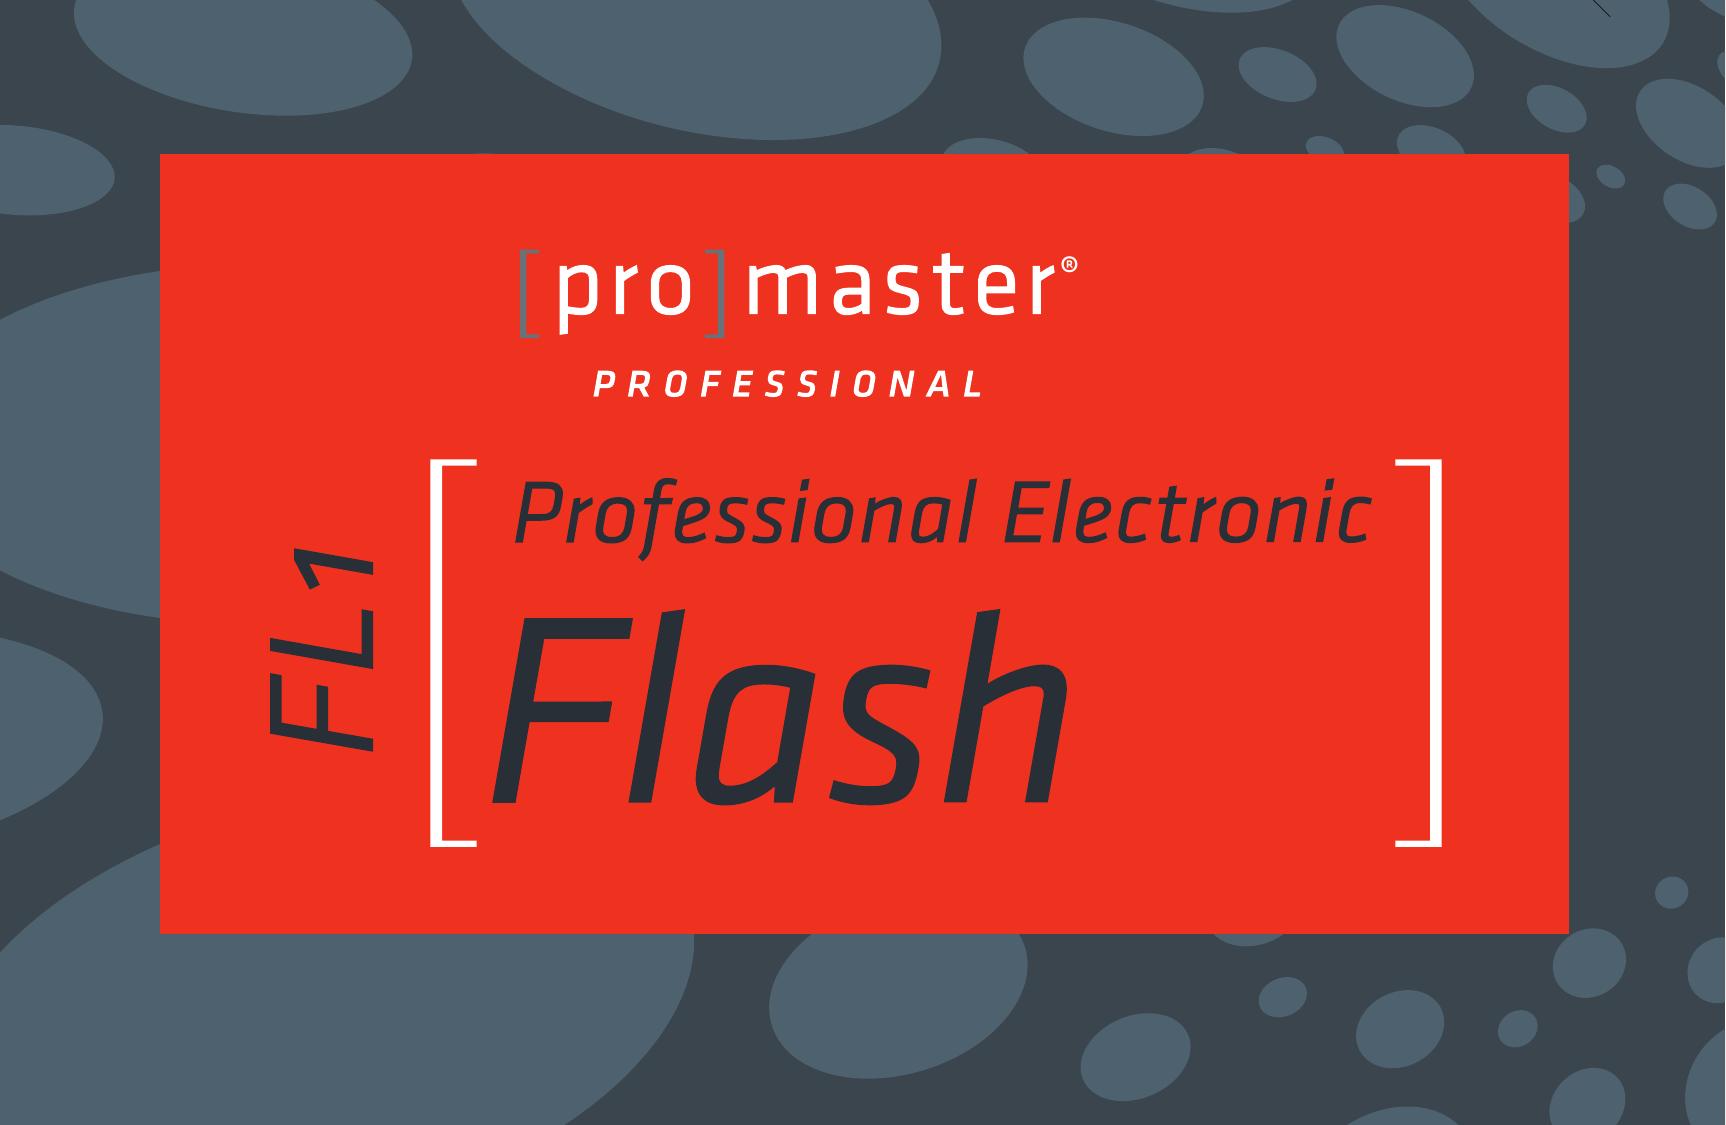 ProMaster FL1 Pro (Sony) Camera Accessories User Manual